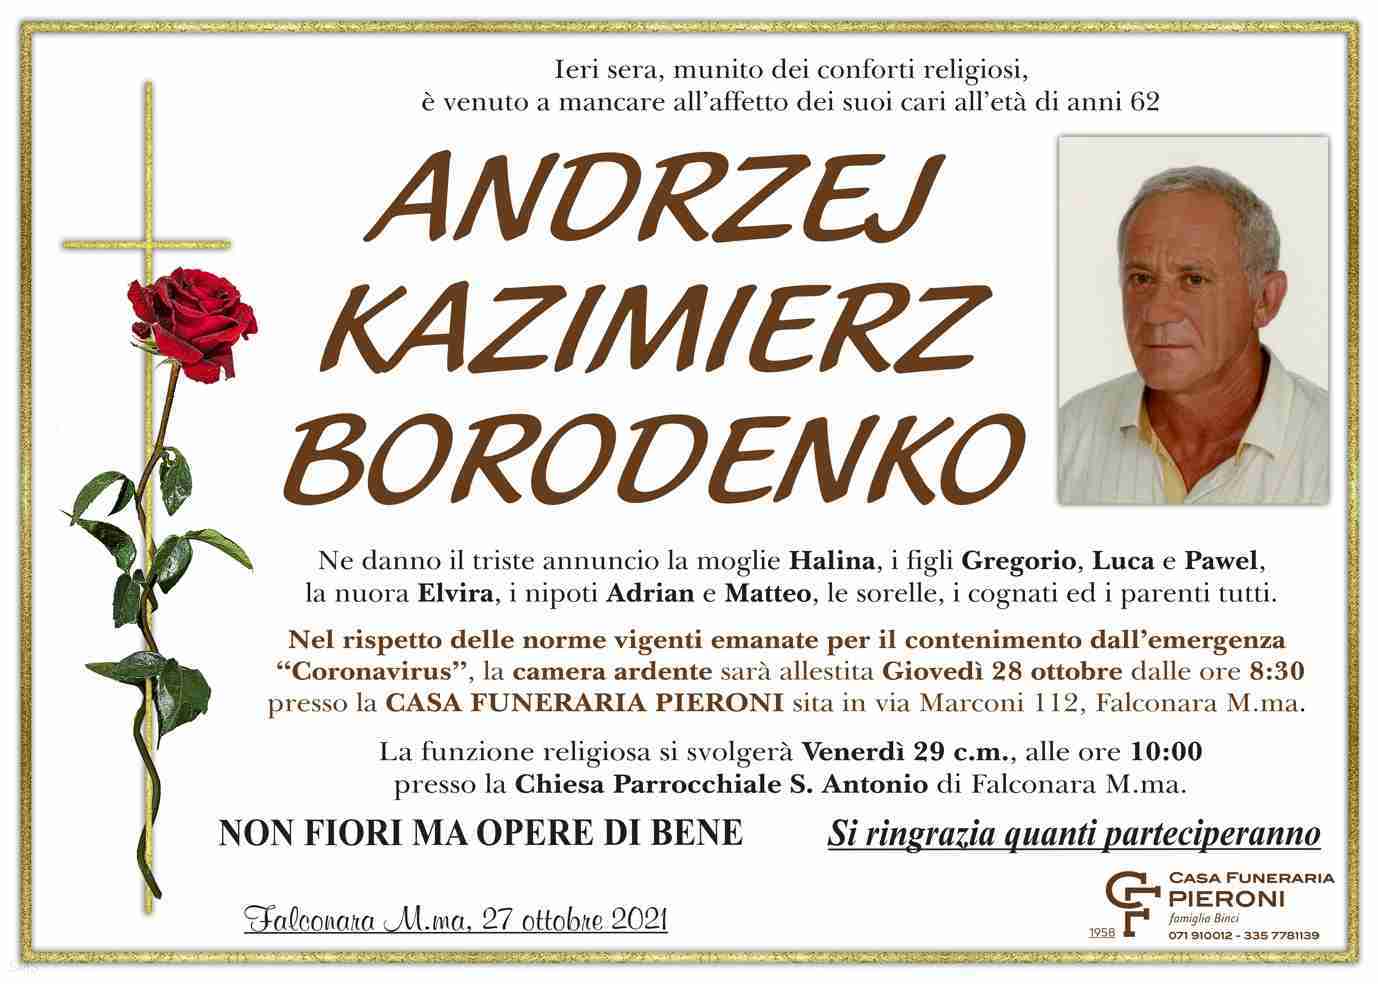 Andrzej Kazimierz Borodenko